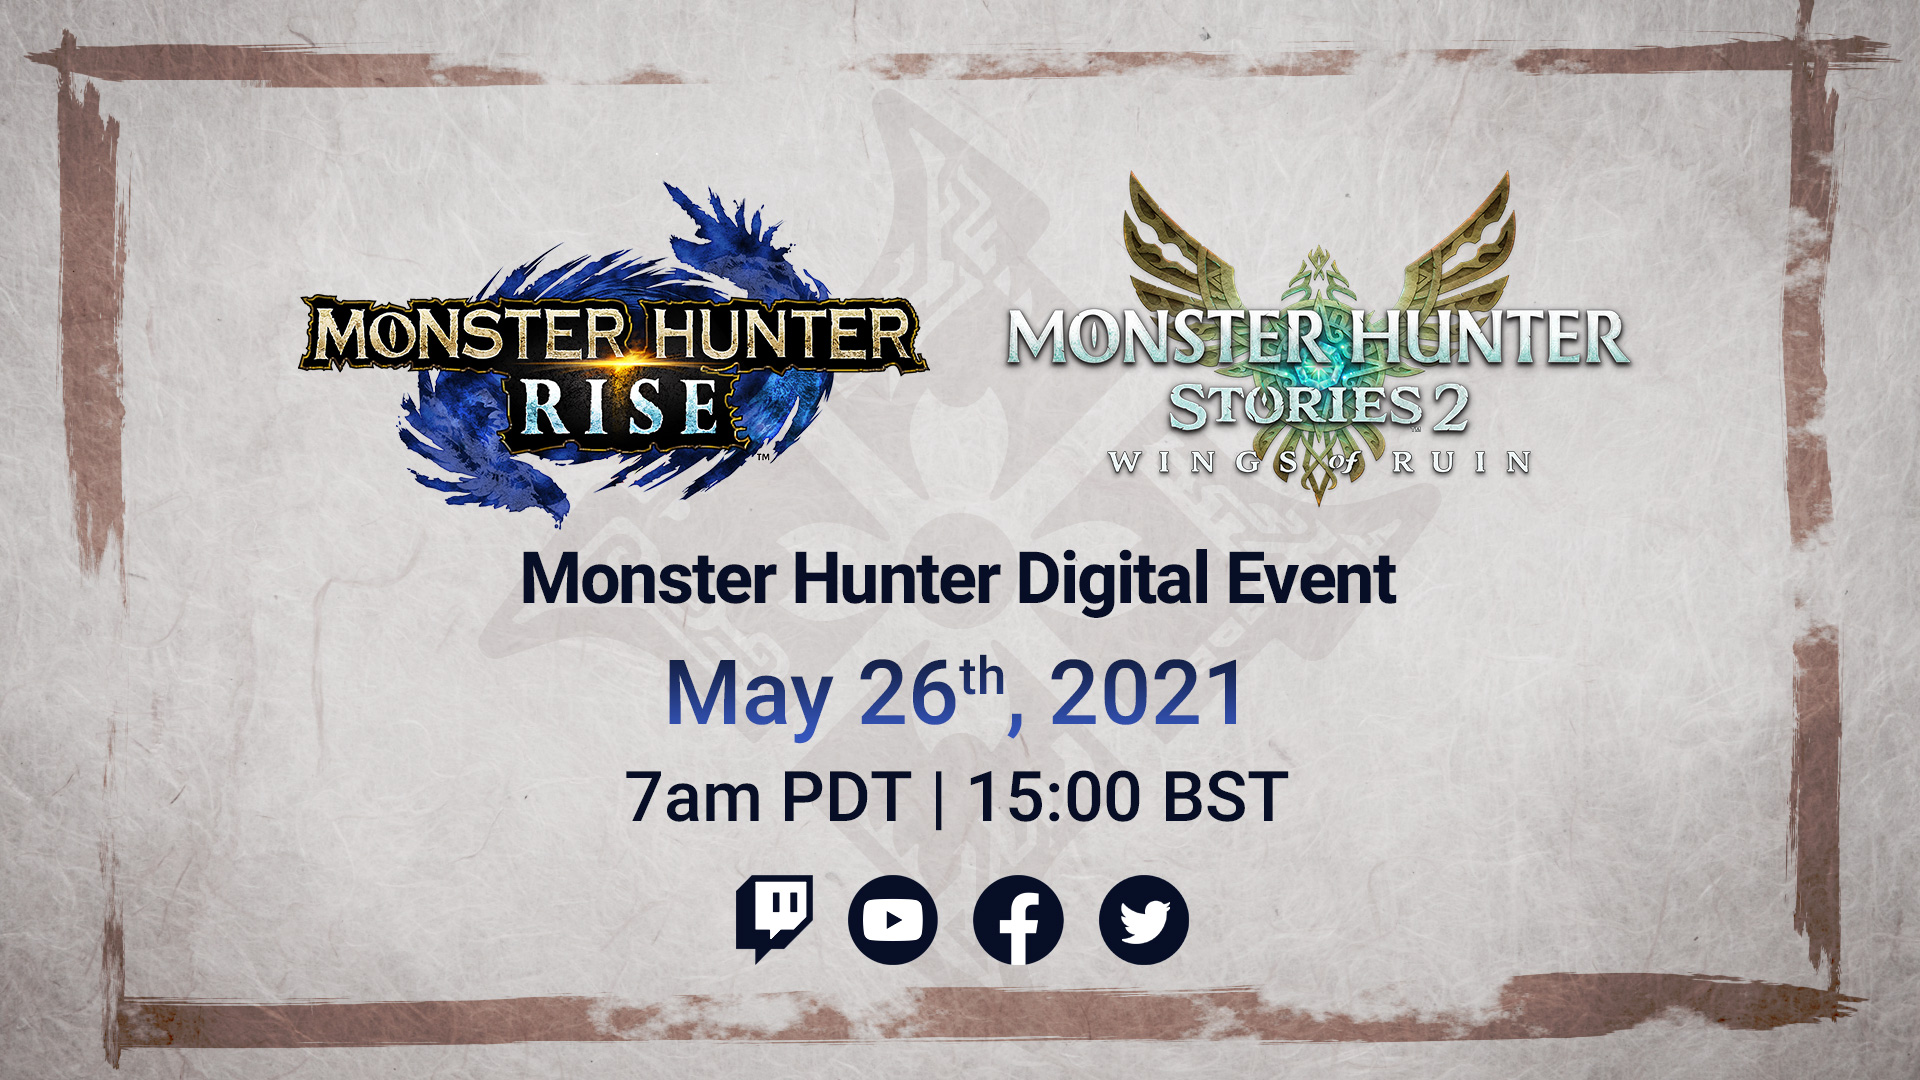 Rise update mh Monster Hunter